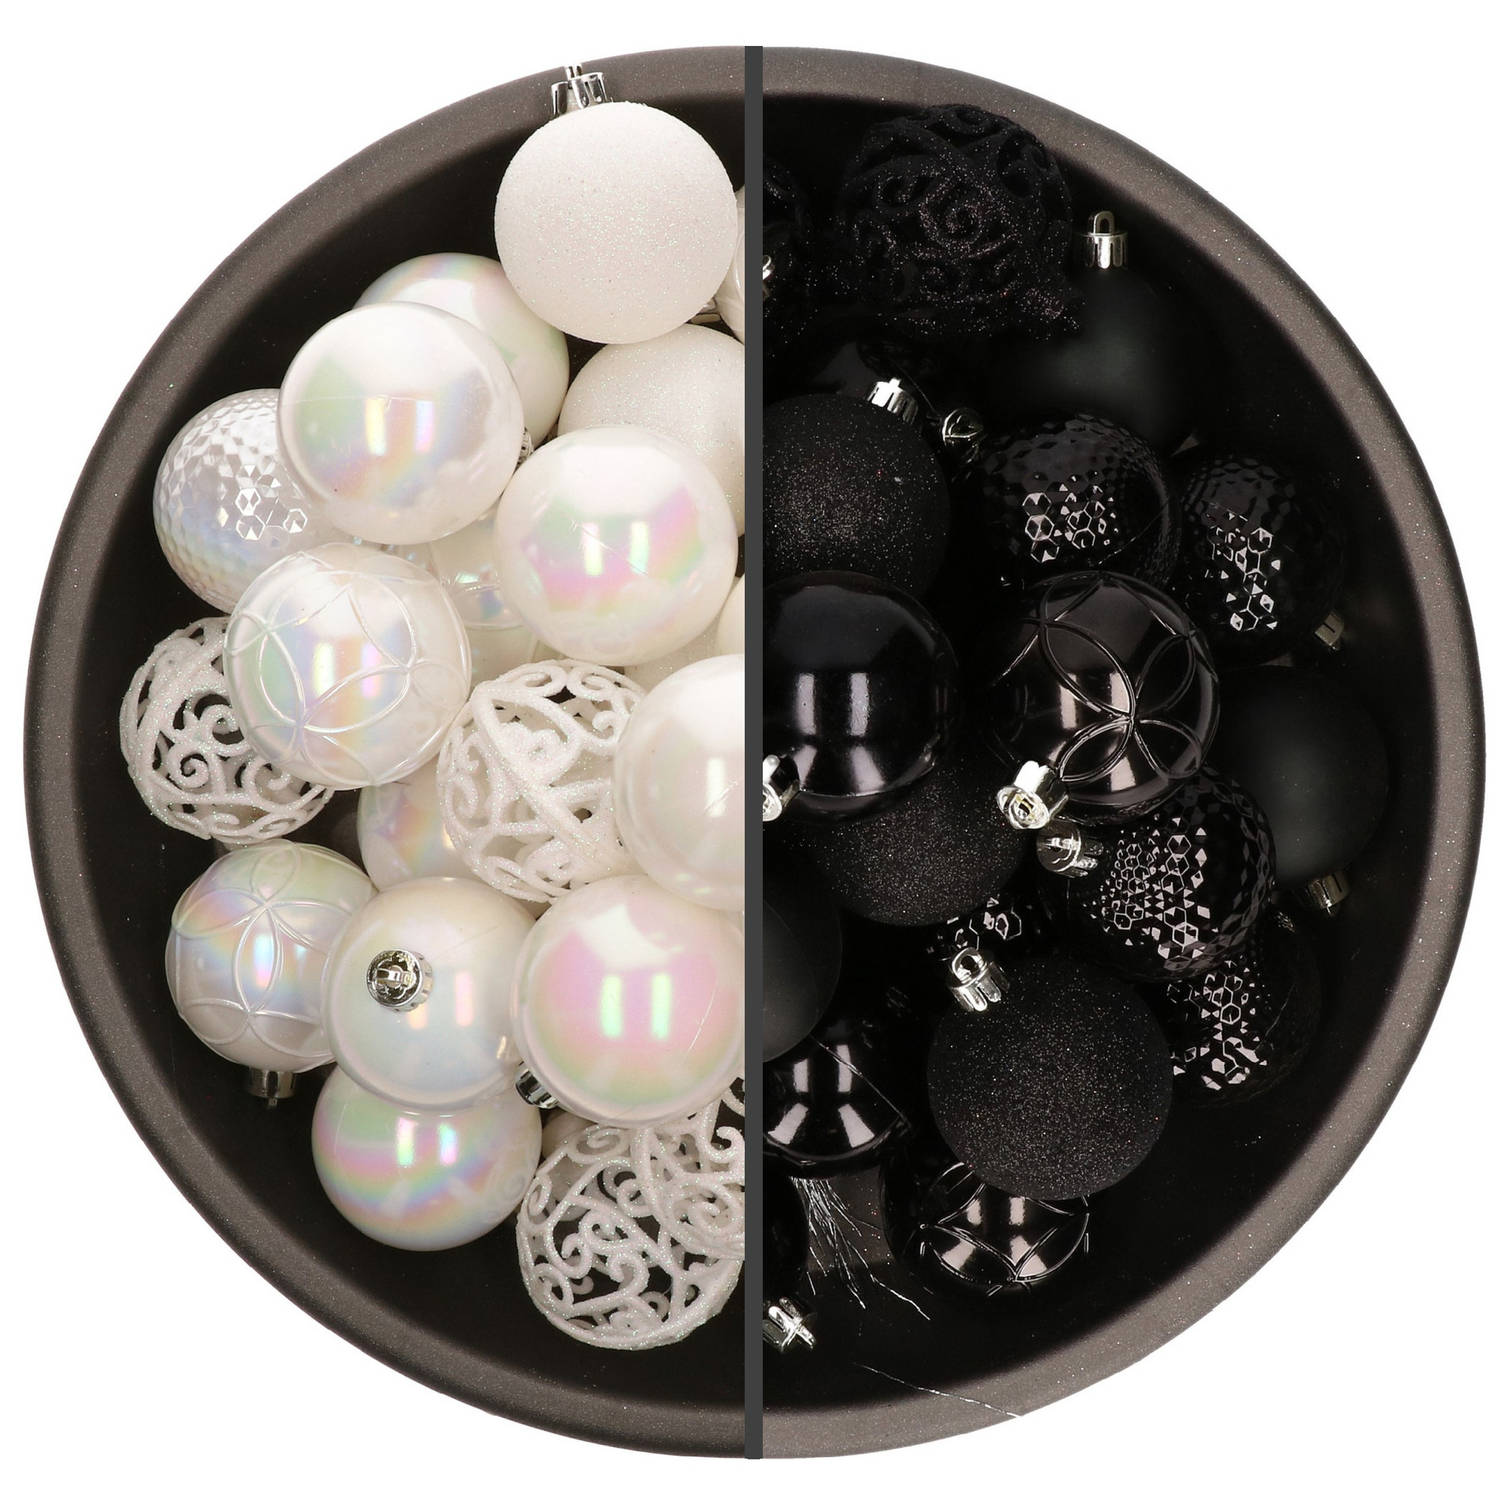 74x stuks kunststof kerstballen mix van zwart en parelmoer wit 6 cm - Kerstbal